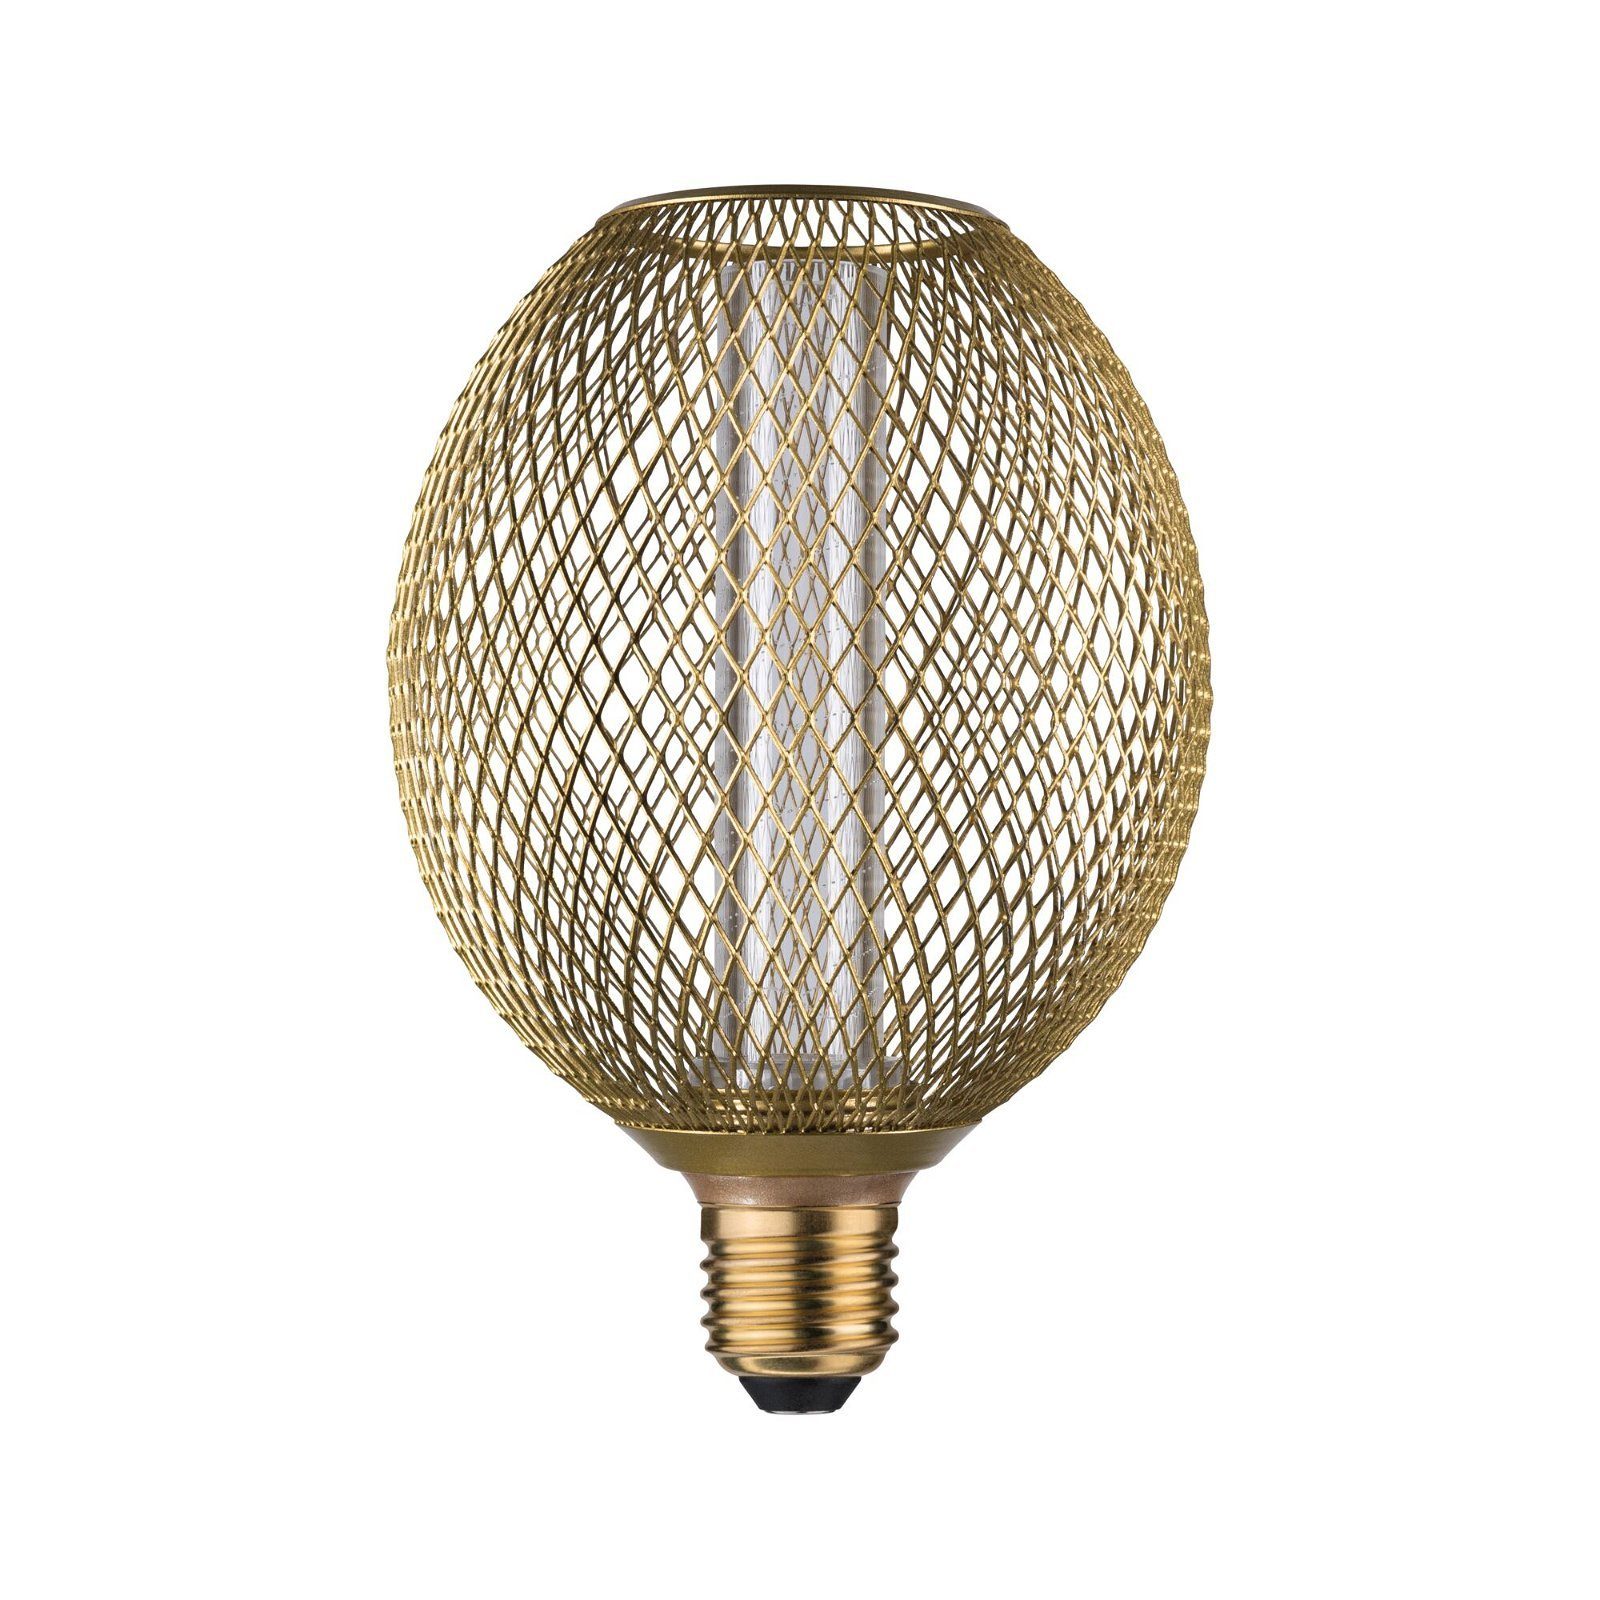 Paulmann LED-Leuchtmittel Metallic Glow Globe messing Spiral 200lm 4,2W  1800K 230V, Gemütliche und goldene Akzentbeleuchtung durch LED-Technik